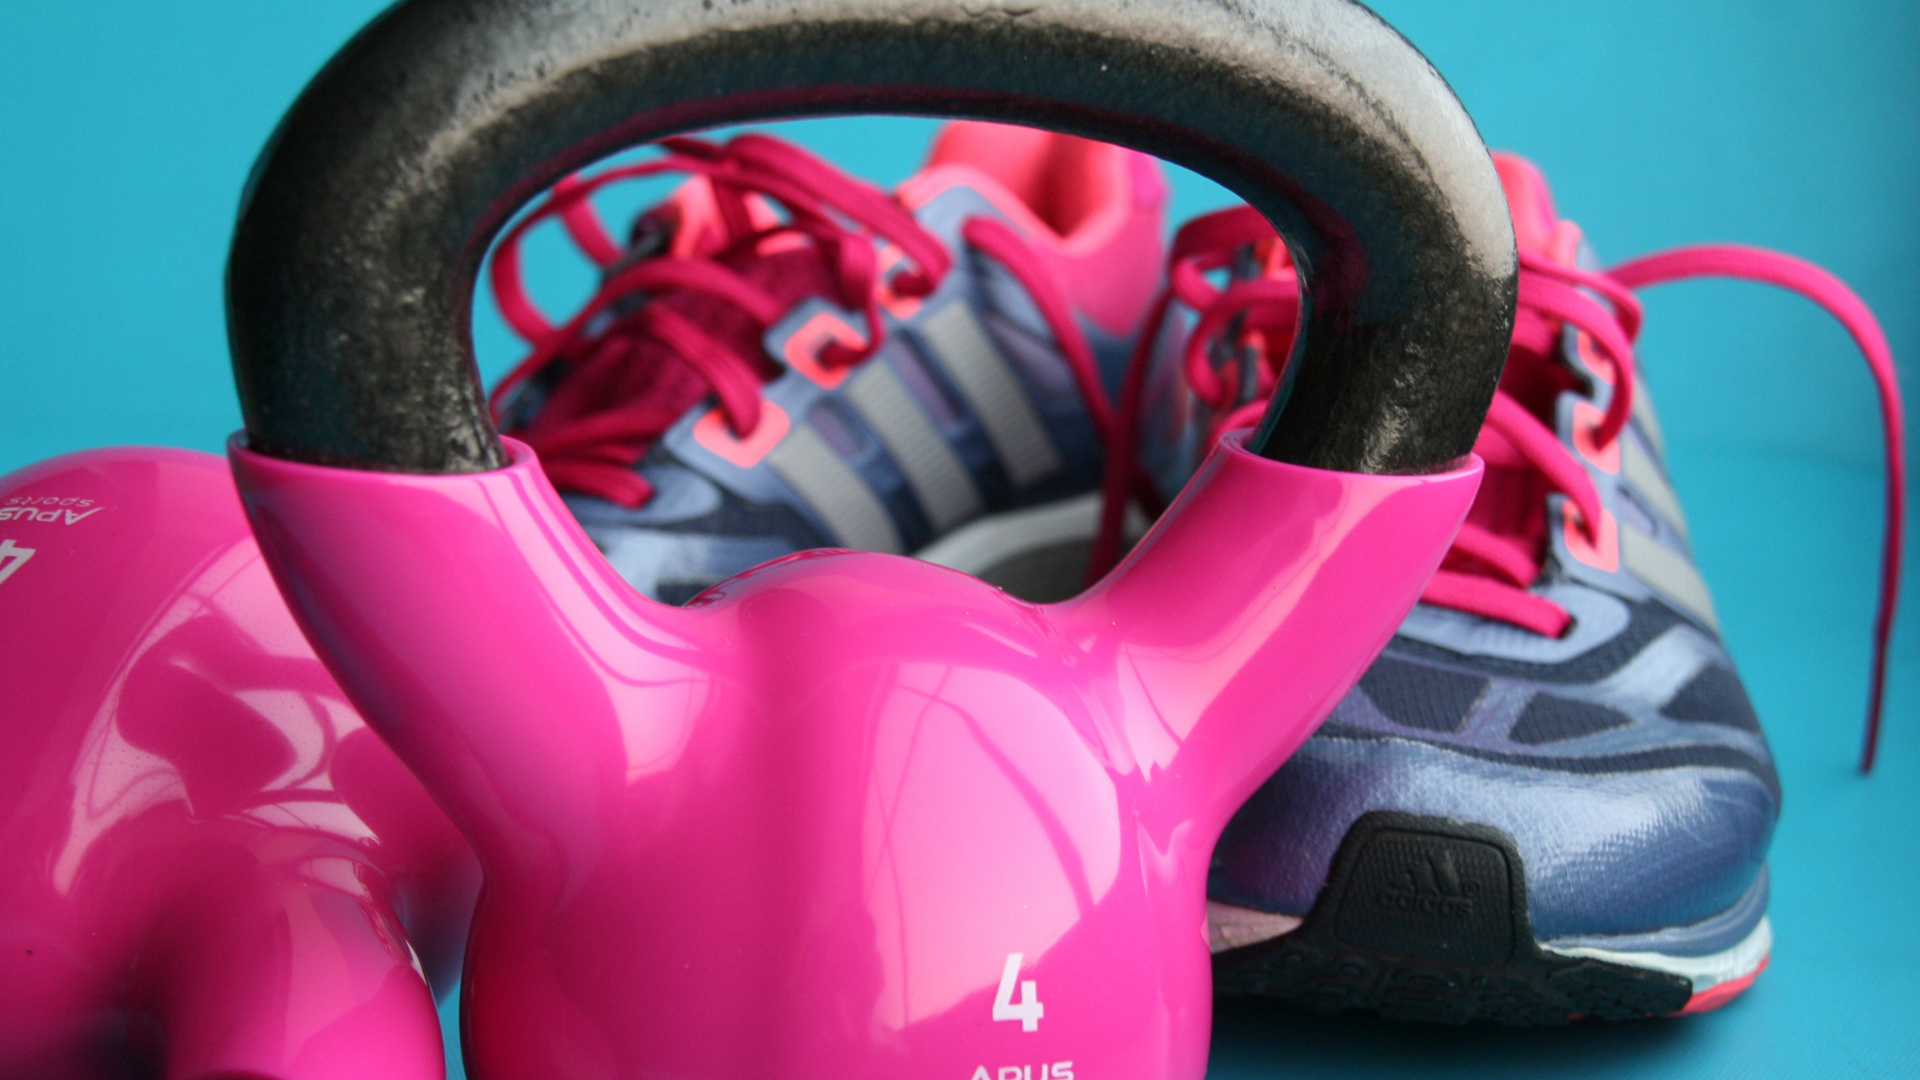 健身中心, 身体健康, 锻炼, 重量训练, 粉红色 壁纸 1920x1080 允许